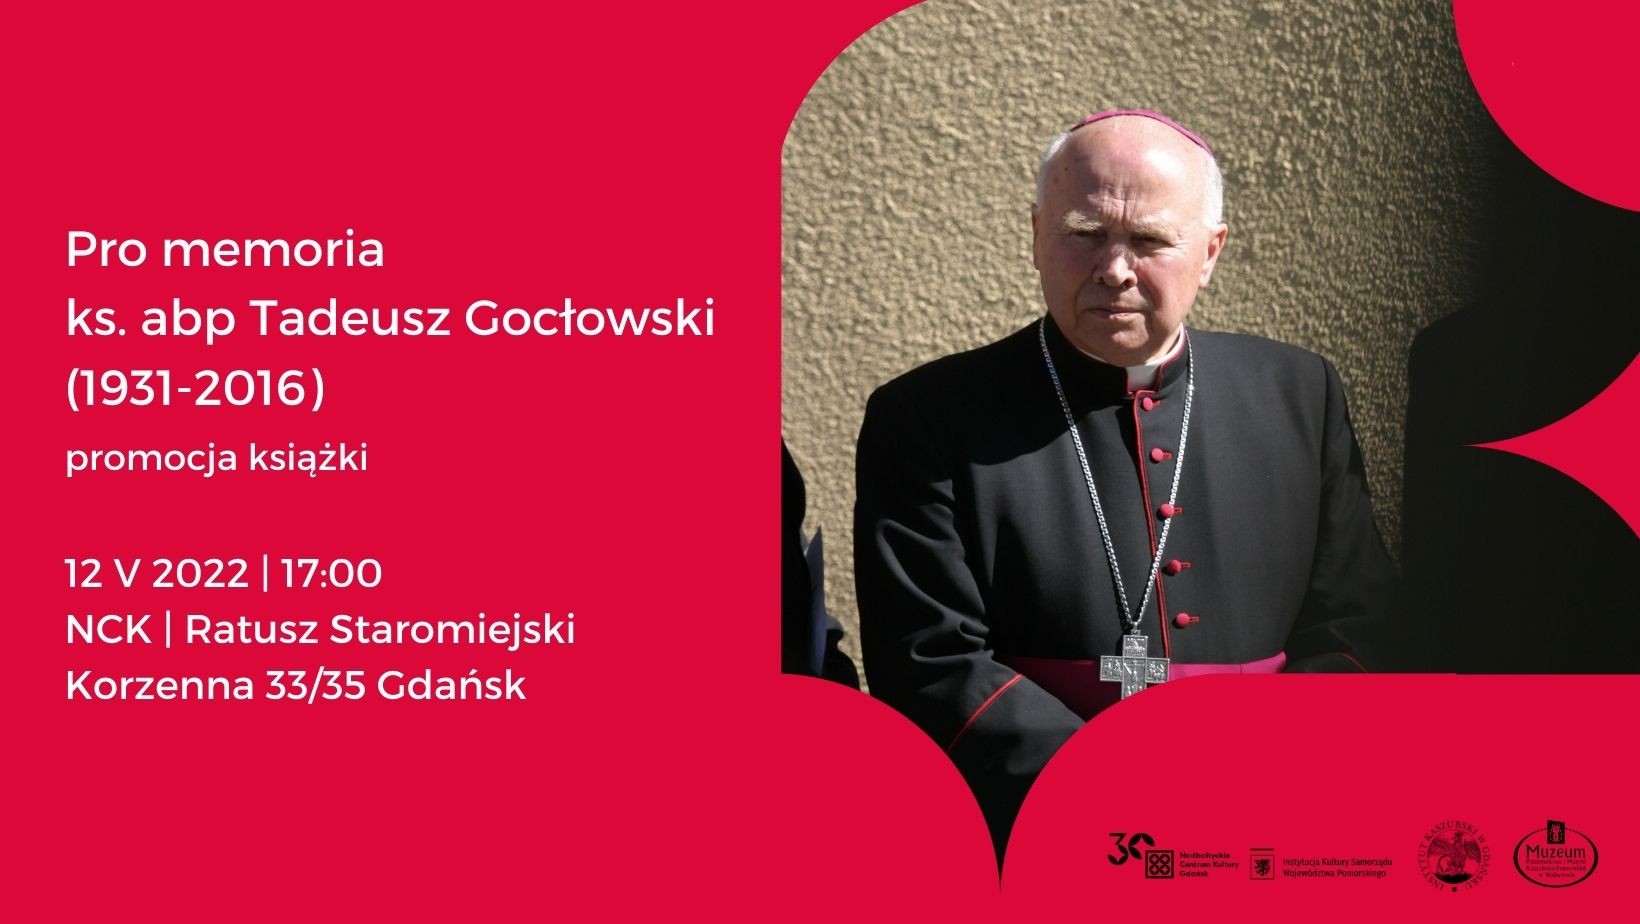 Pro memoria ks. abp. Tadeusz Gocłowski